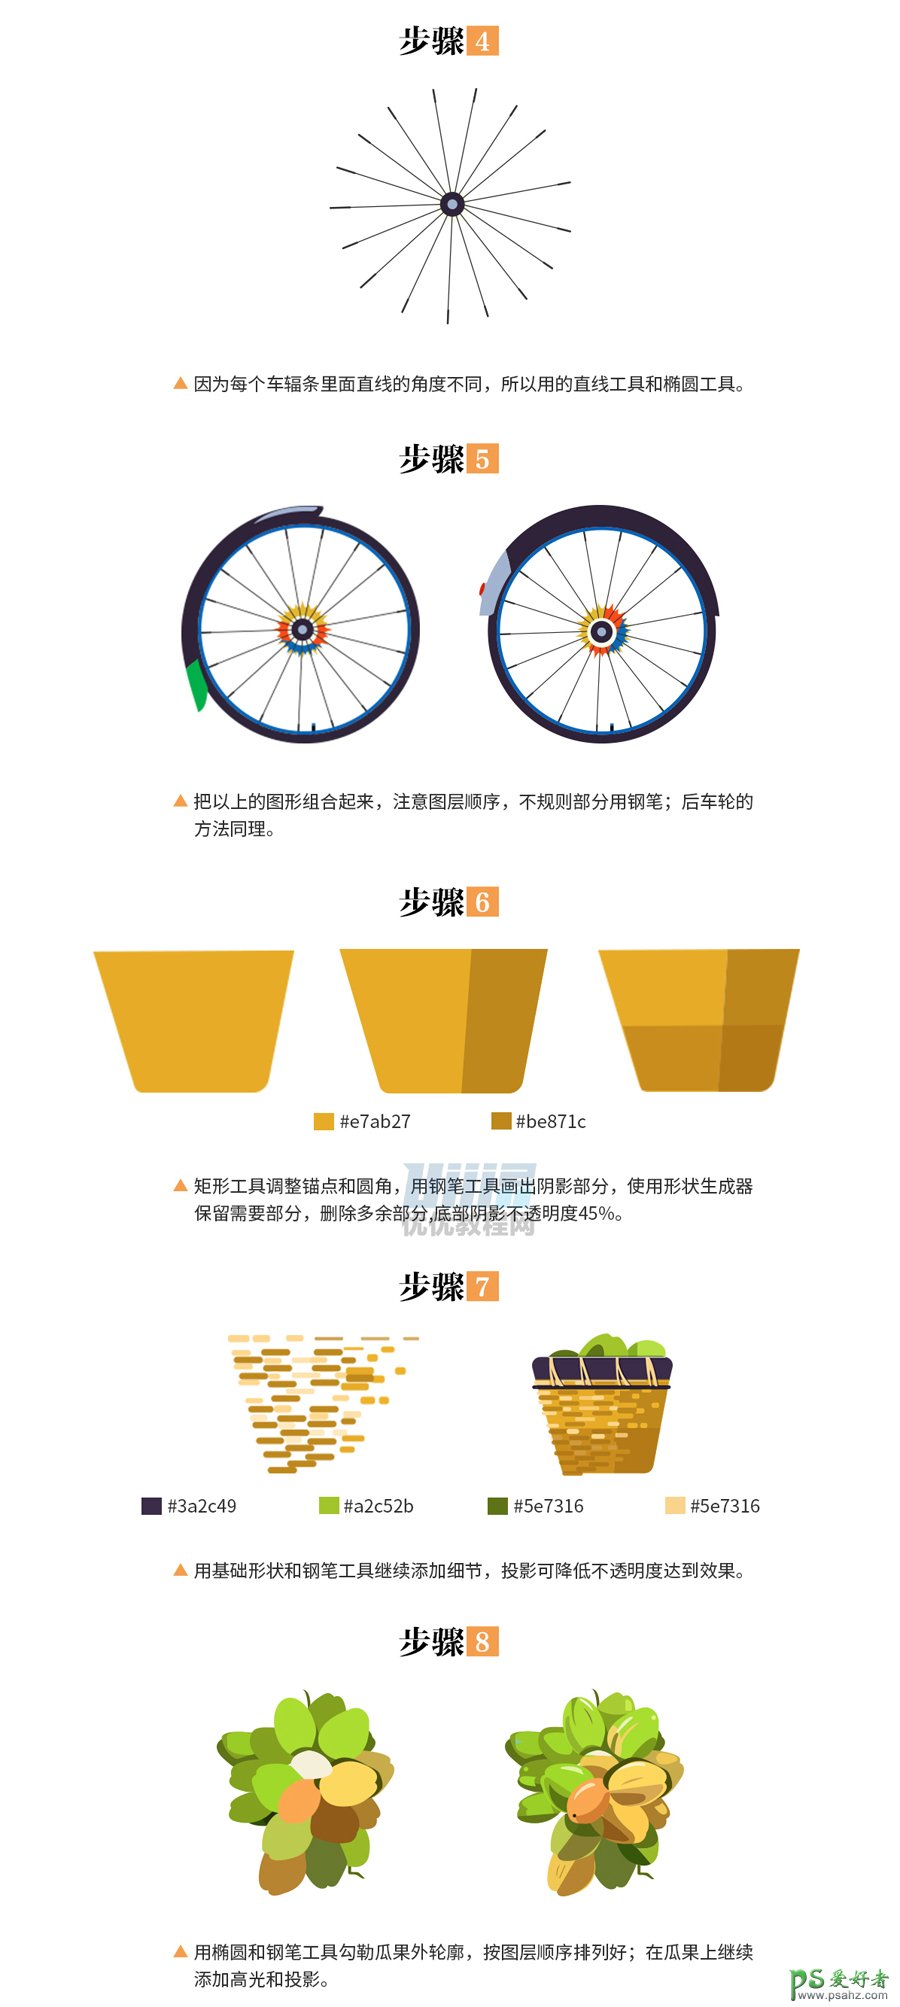 PS结合AI软件绘制漂亮的自行车插画图片，绘制质感自行车素材图。